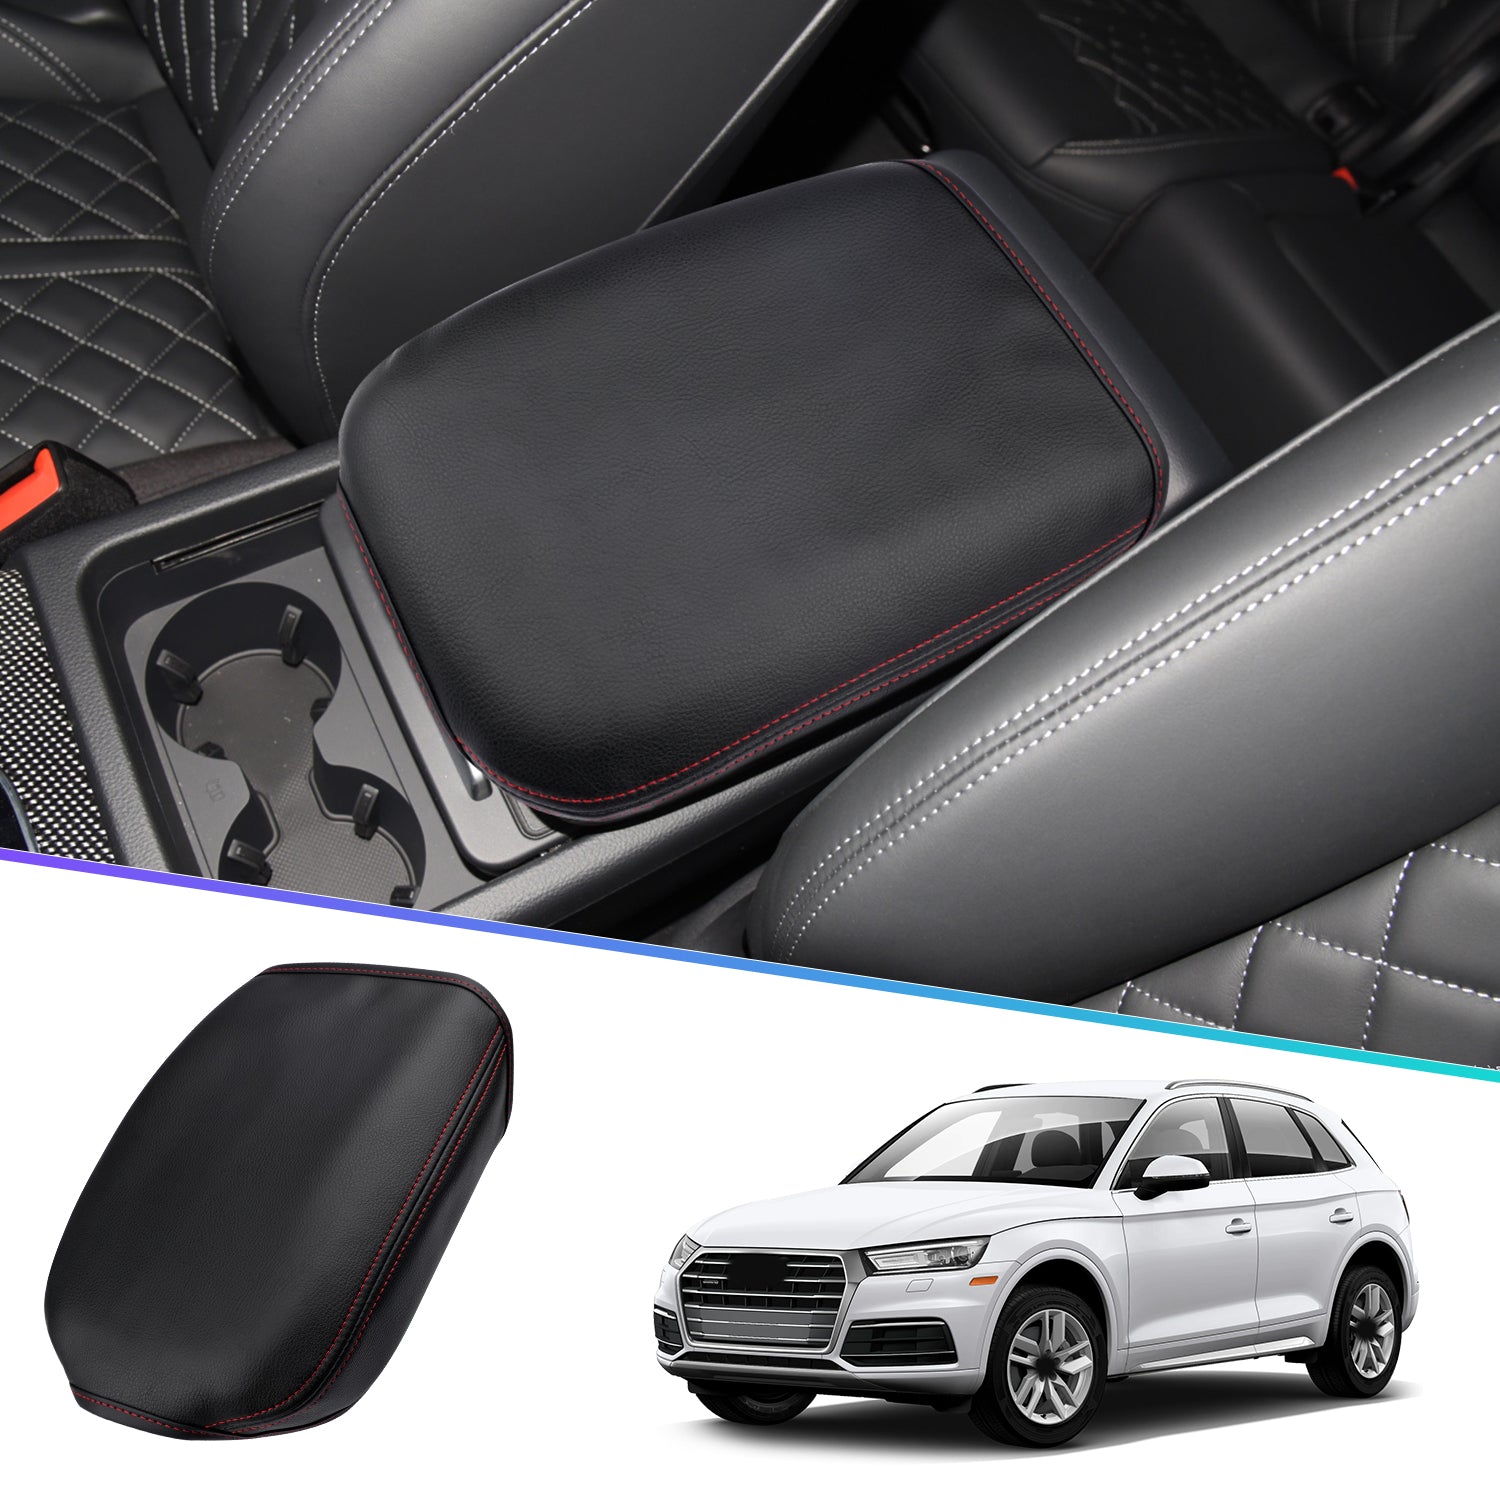 Audi Q5 Armrest Cover 2018+ - LFOTPP Car Accessories